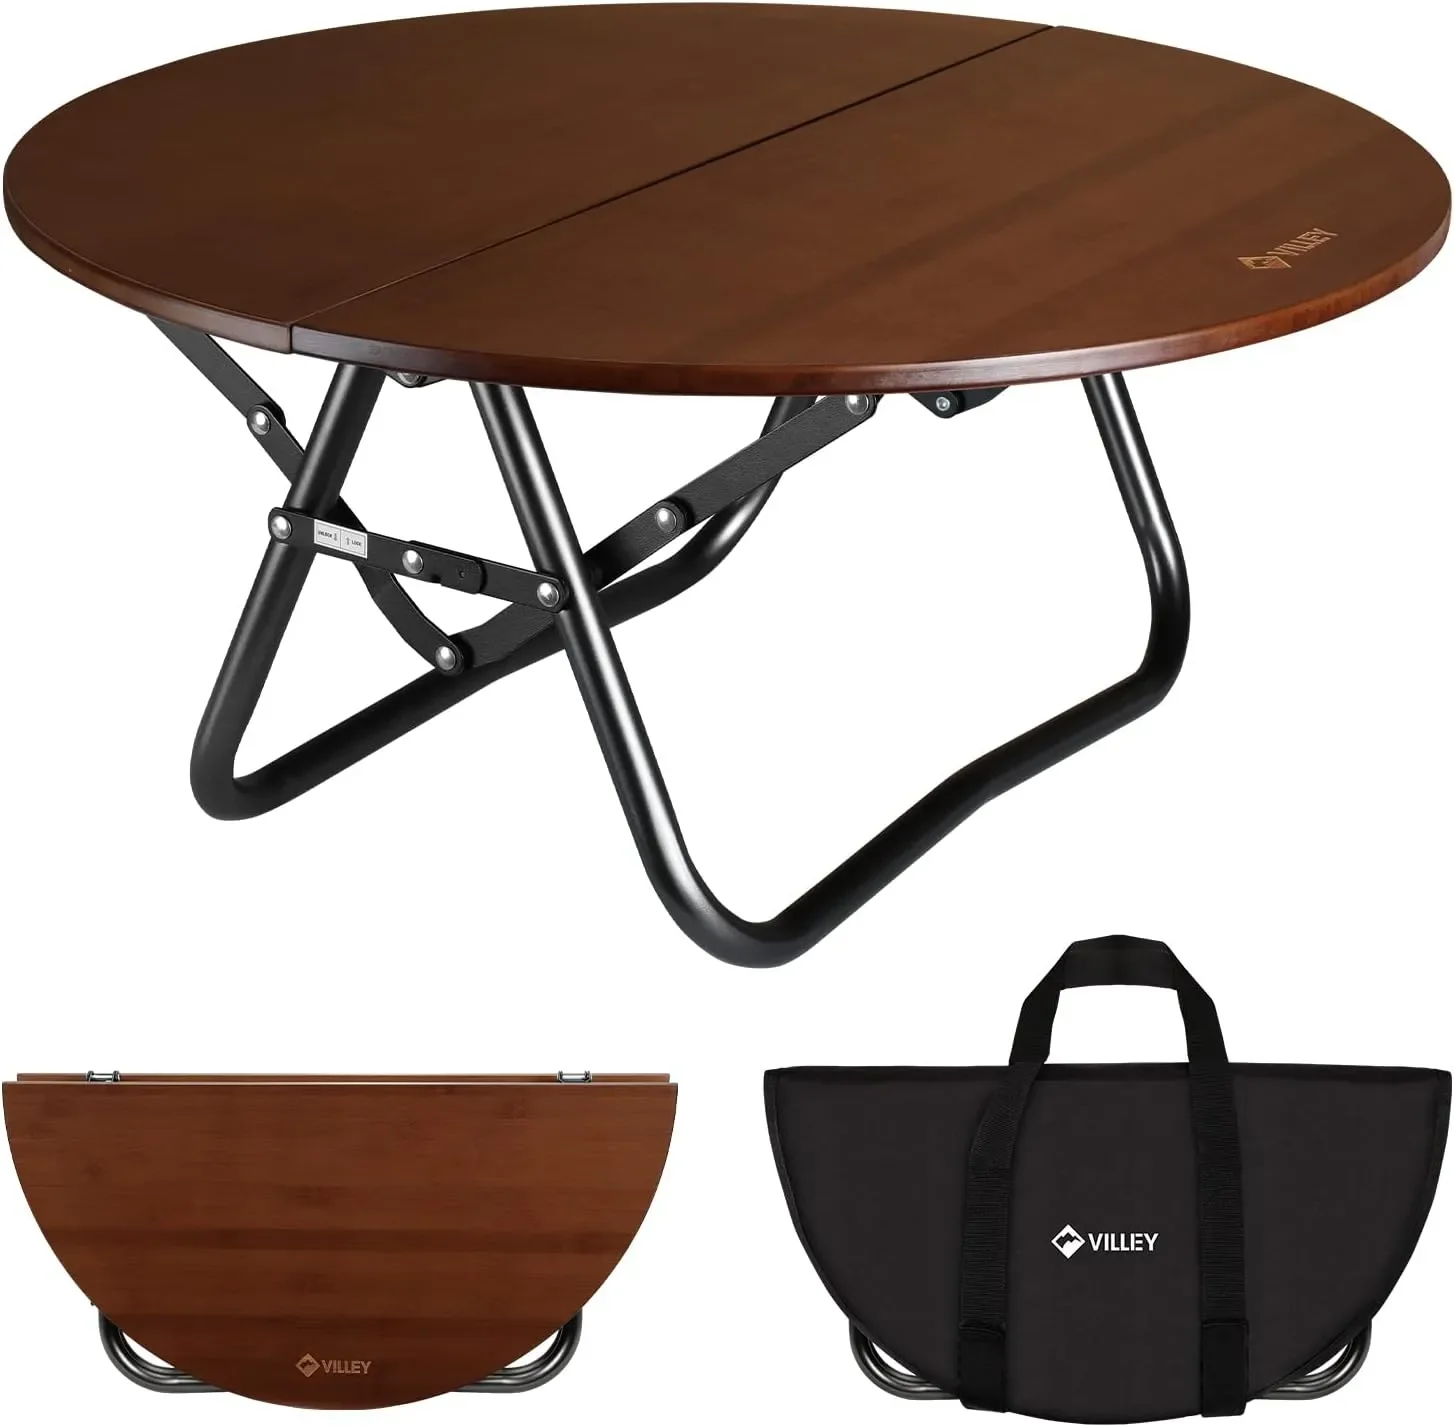 

Круглый складной стол, походный полускладной портативный стол с сумкой для переноски, для дома и улицы, для пикника, кофе, барбекю, пляжа